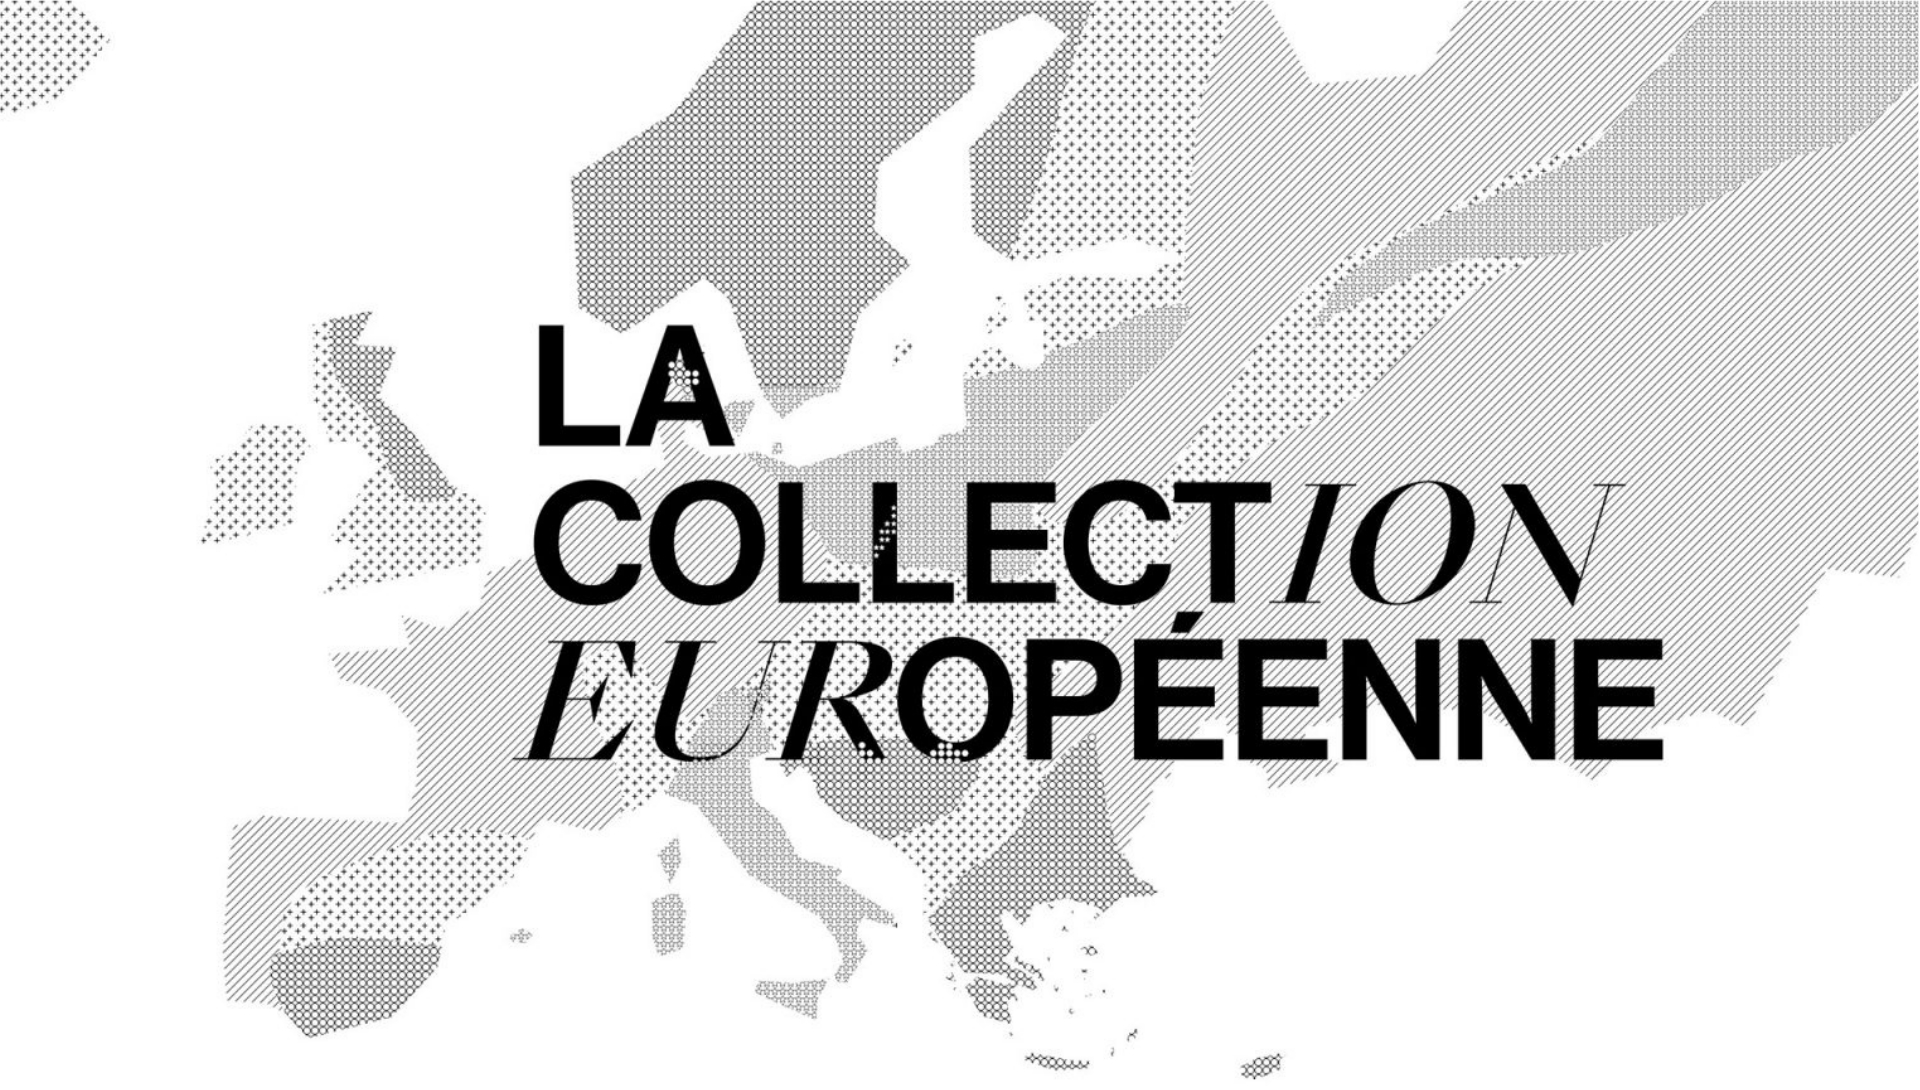 La Collection européenne